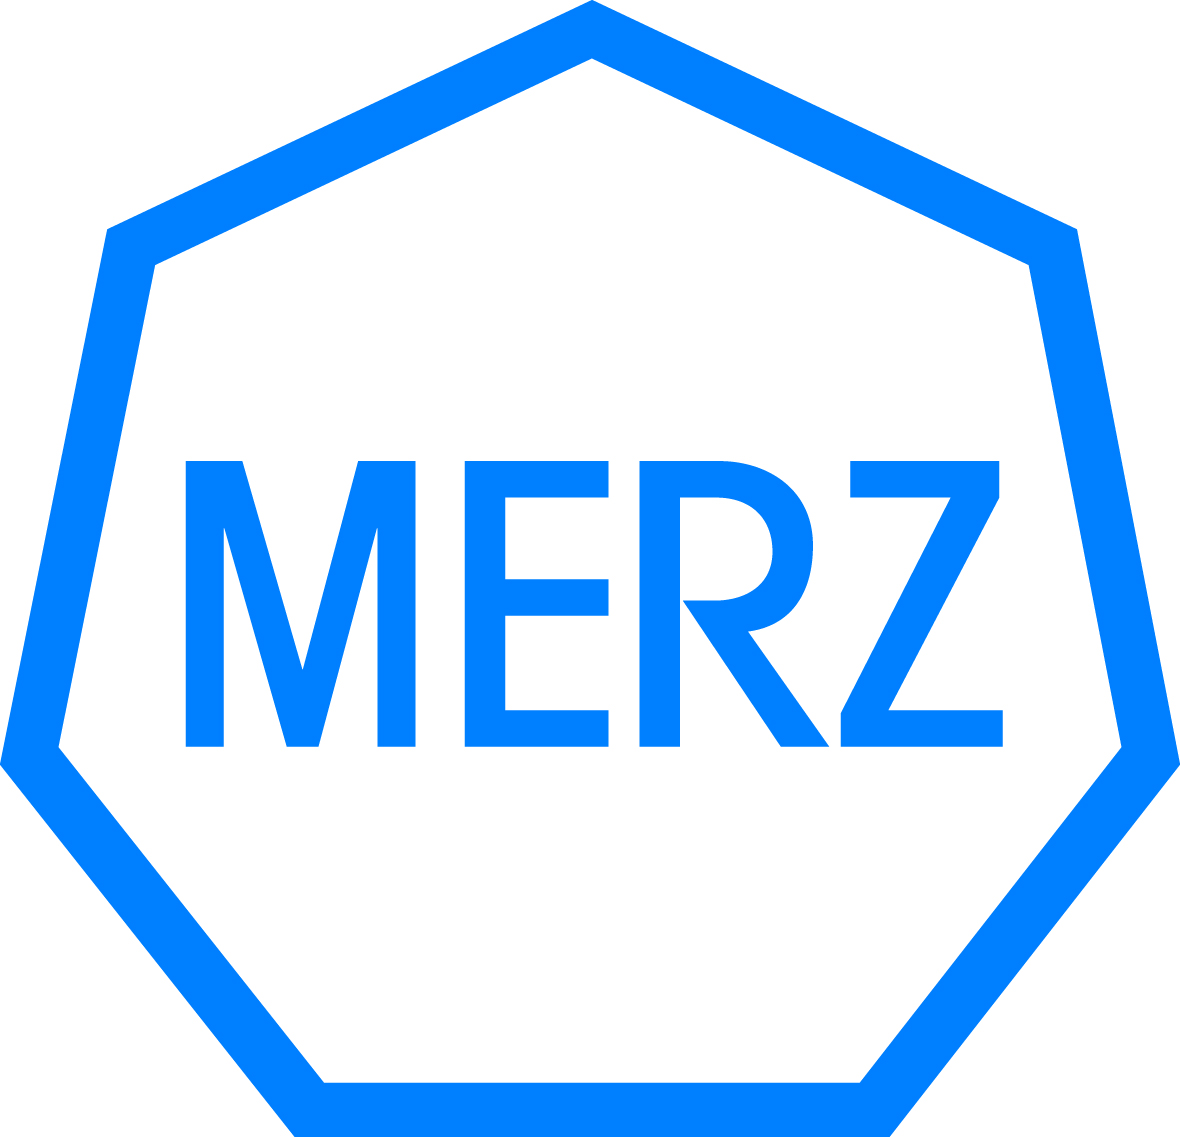 Merz Pharma GmbH & Co KGaA_logo